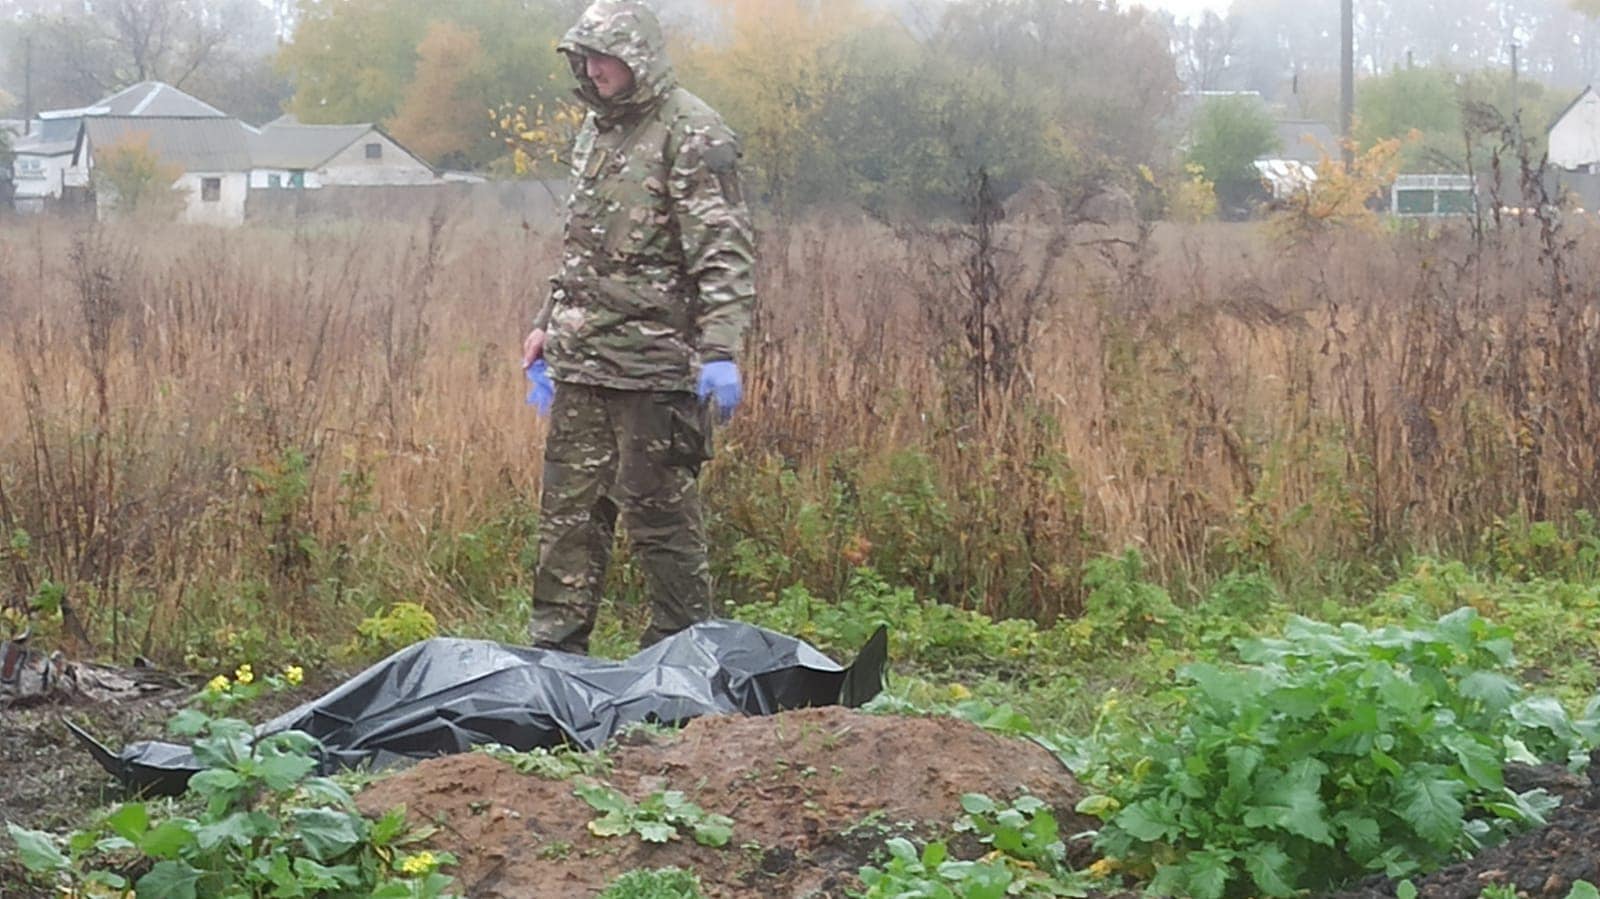 В Харьковской области начали эксгумацию тел военных ВСУ, погибших при отступлении в апреле